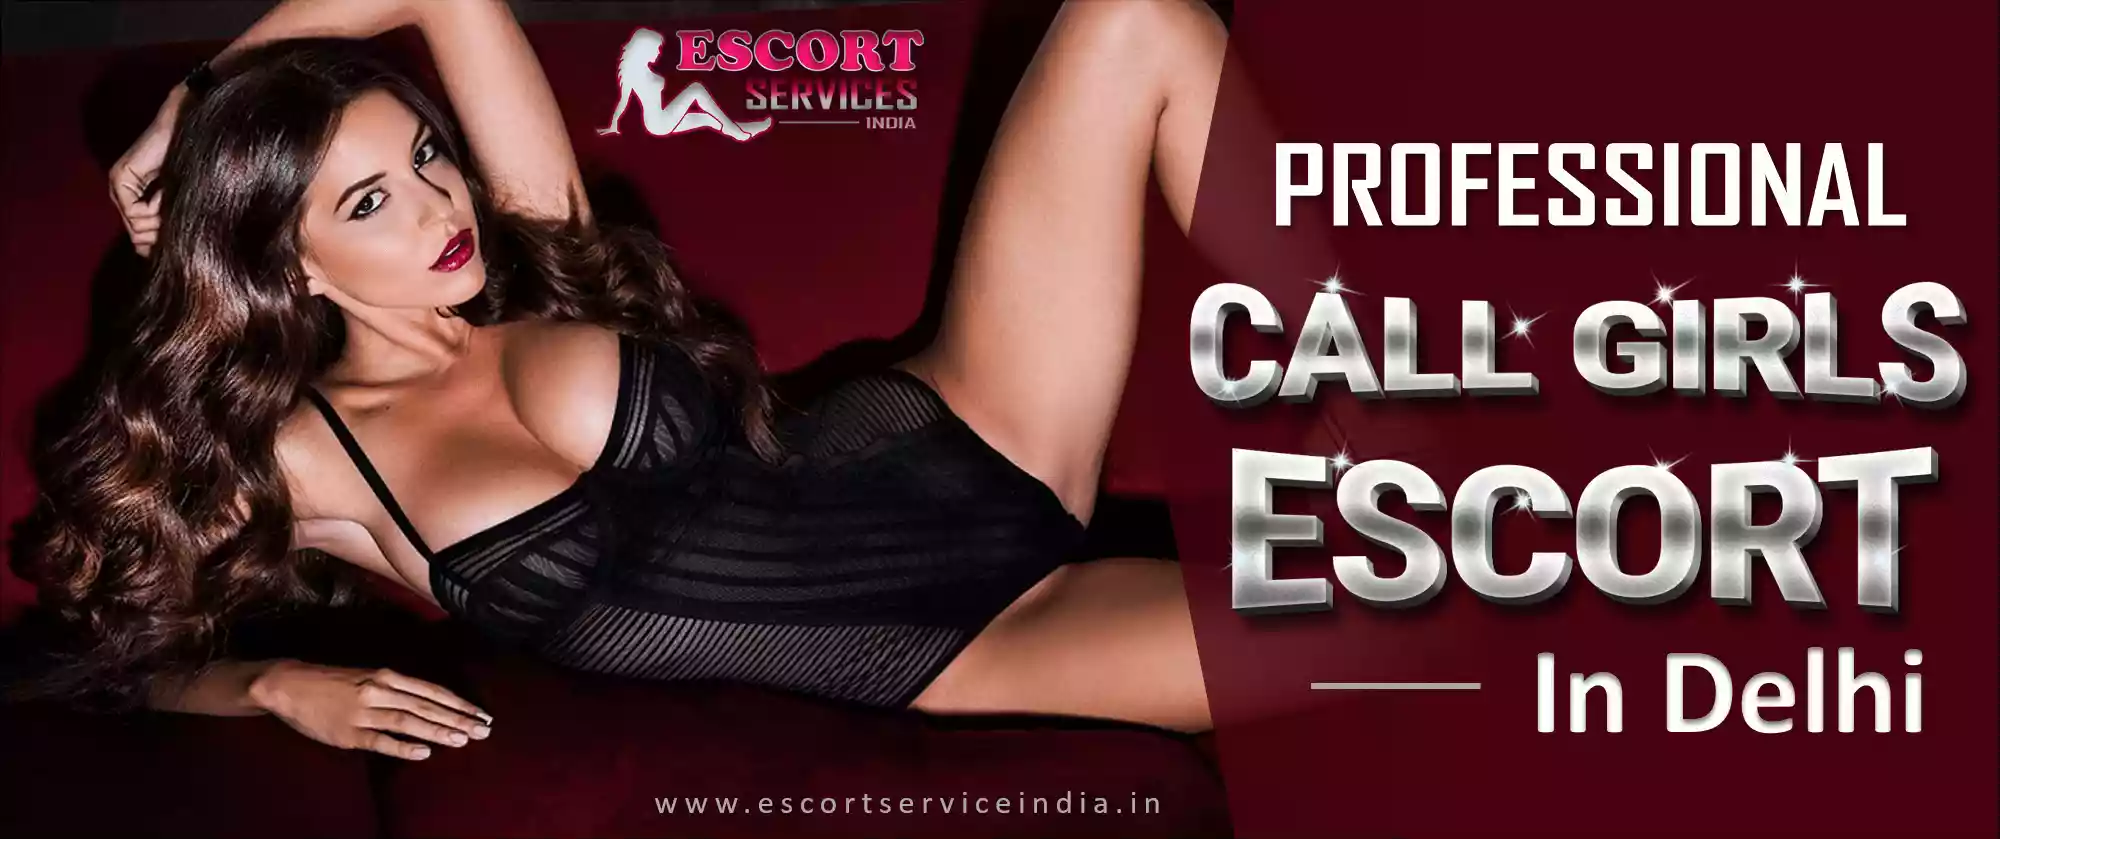 Escort Service India